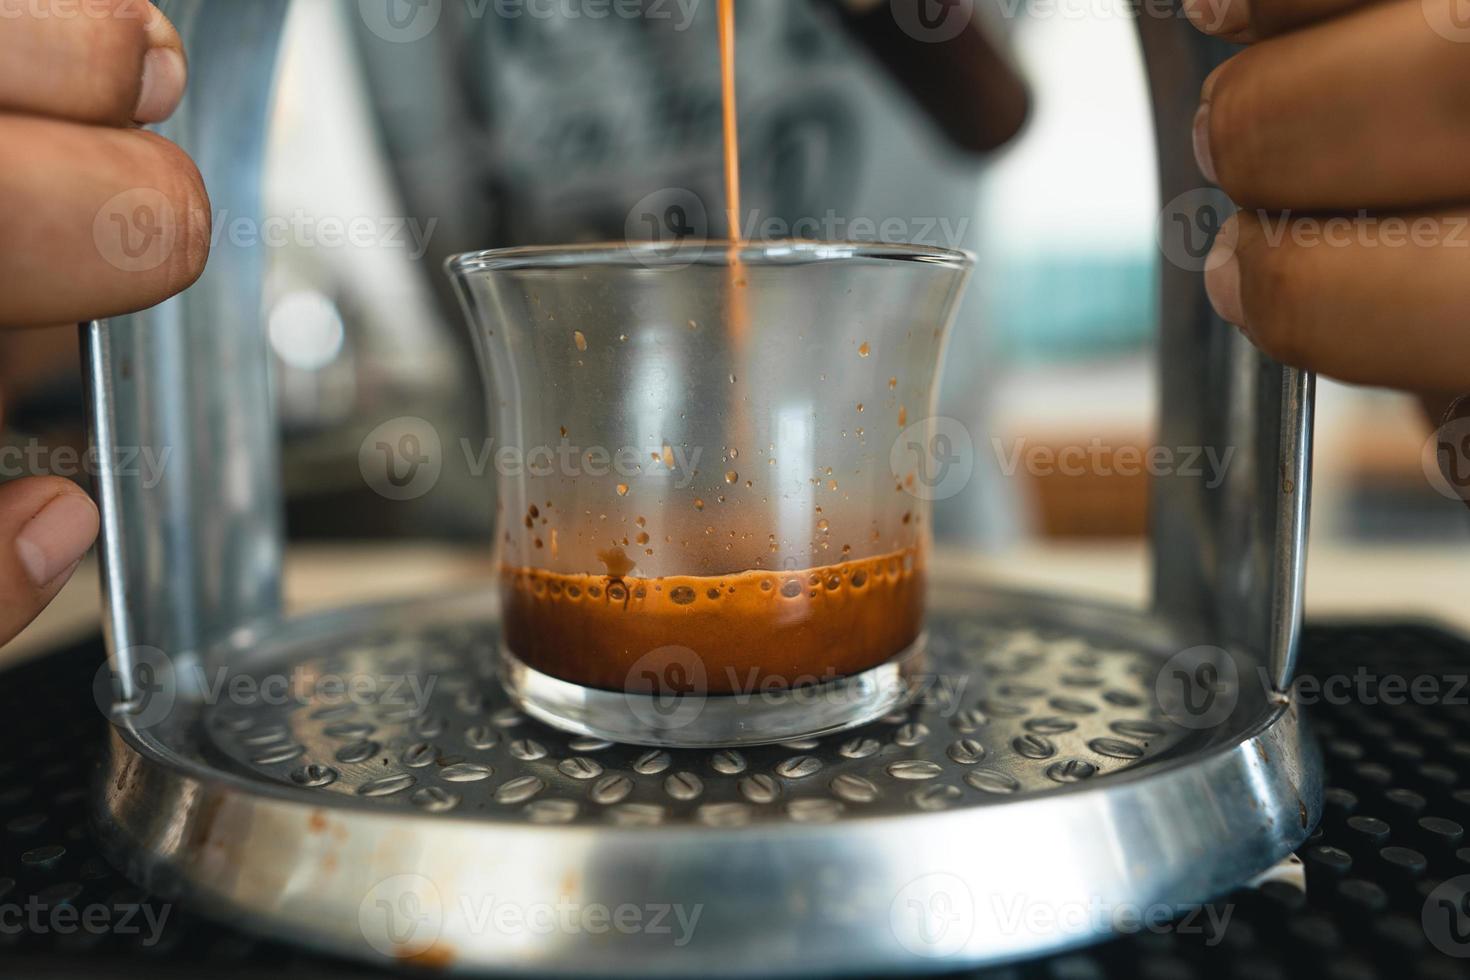 ecfresso-kaffe från en pressmaskin till en mugg foto